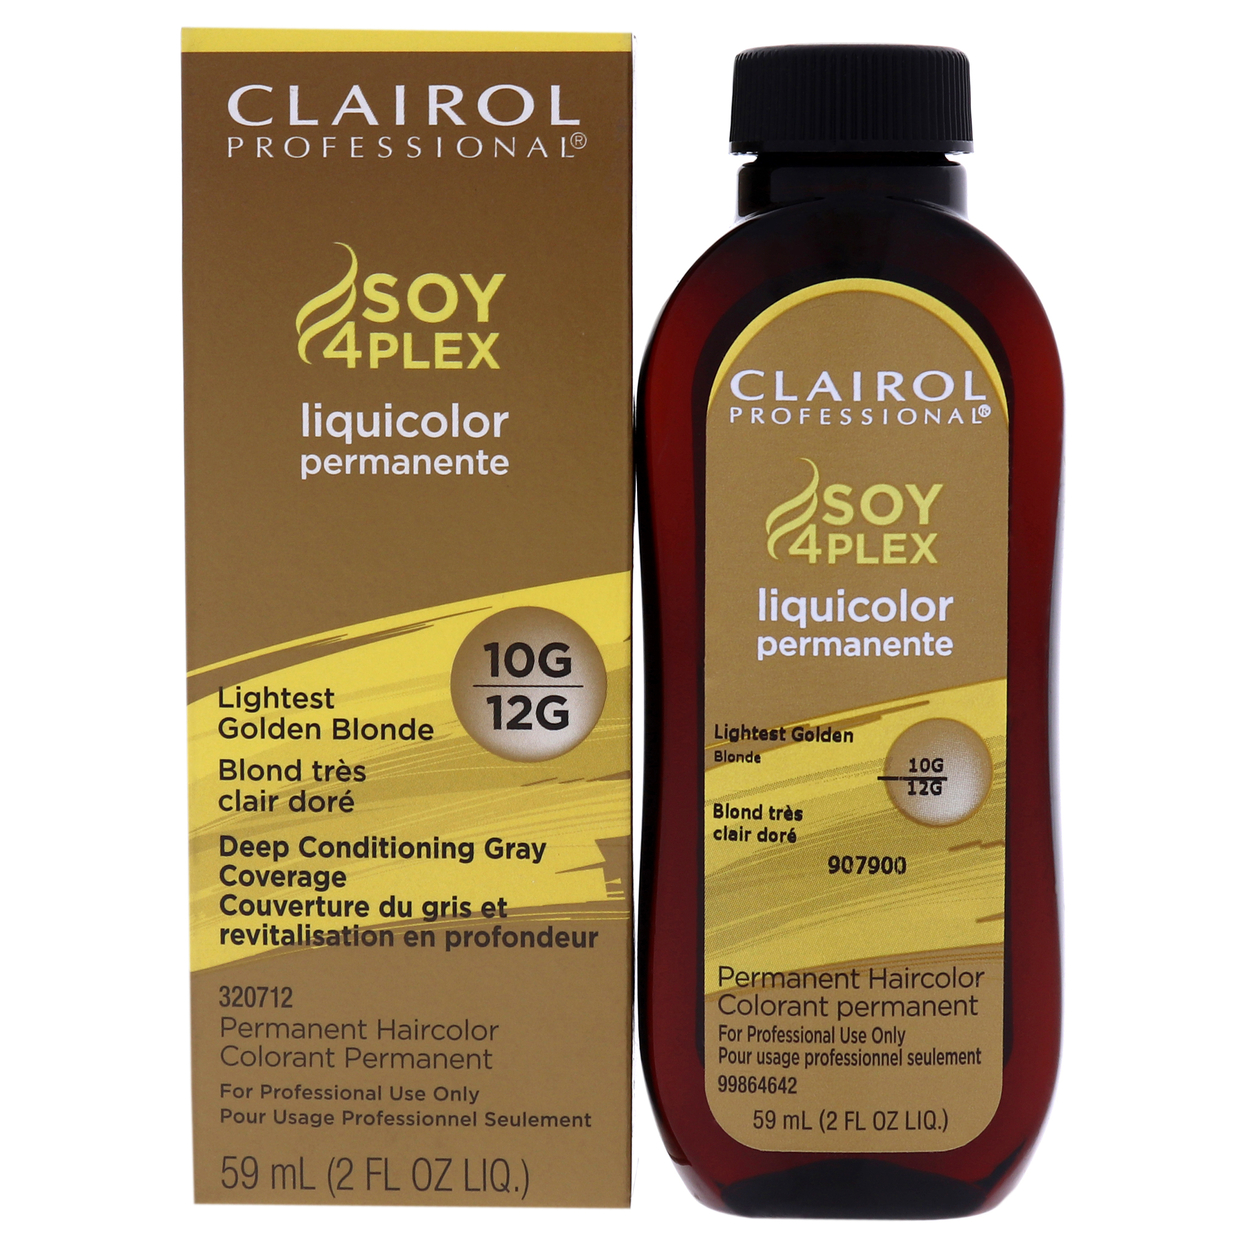 Clairol Professional Liquicolor Permanent Hair Color - 10G Lightest Golden Blonde Hair Color 2 Oz